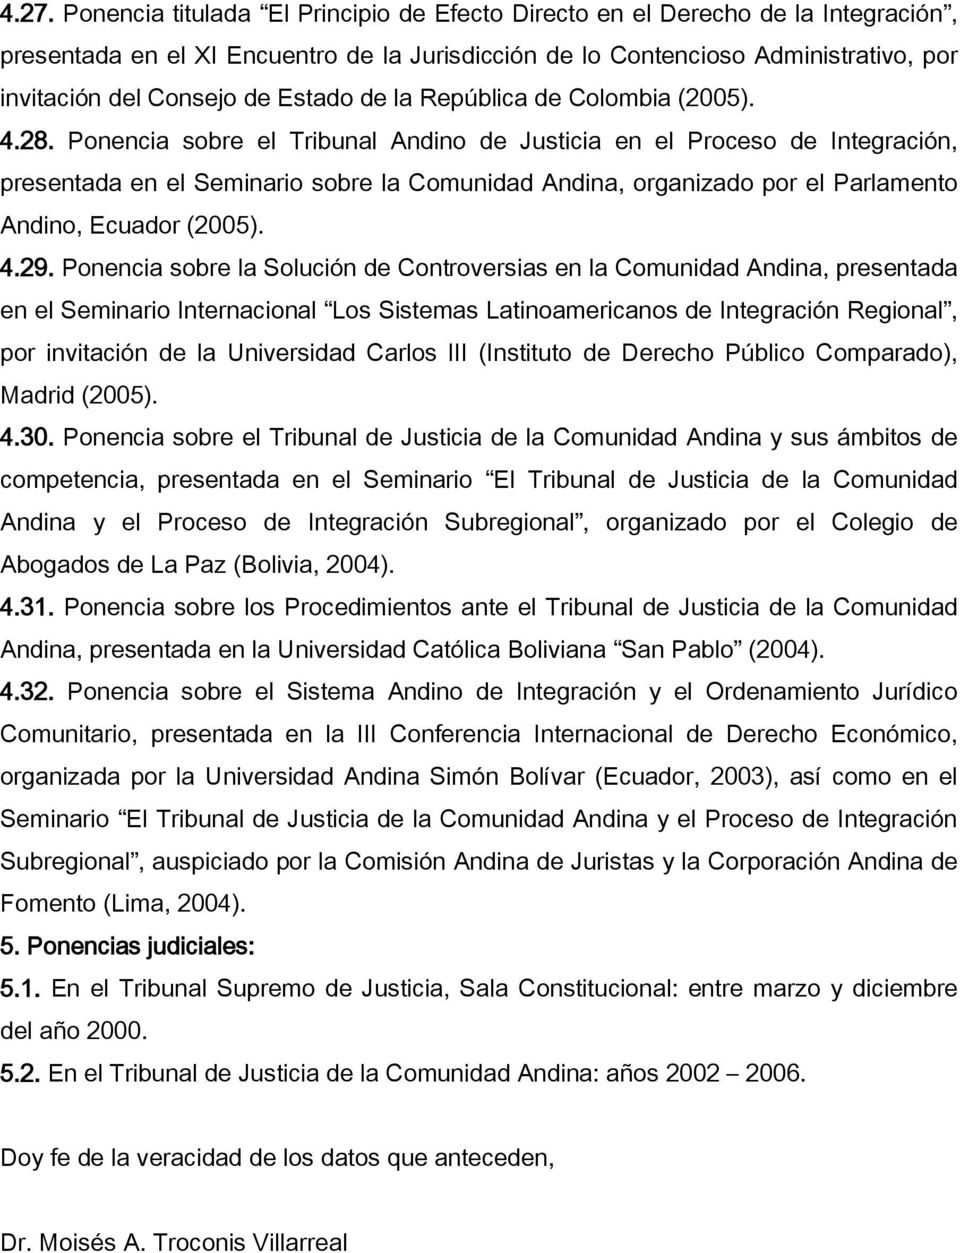 Ponencia sobre el Tribunal Andino de Justicia en el Proceso de Integración, presentada en el Seminario sobre la Comunidad Andina, organizado por el Parlamento Andino, Ecuador (2005). 4.29.